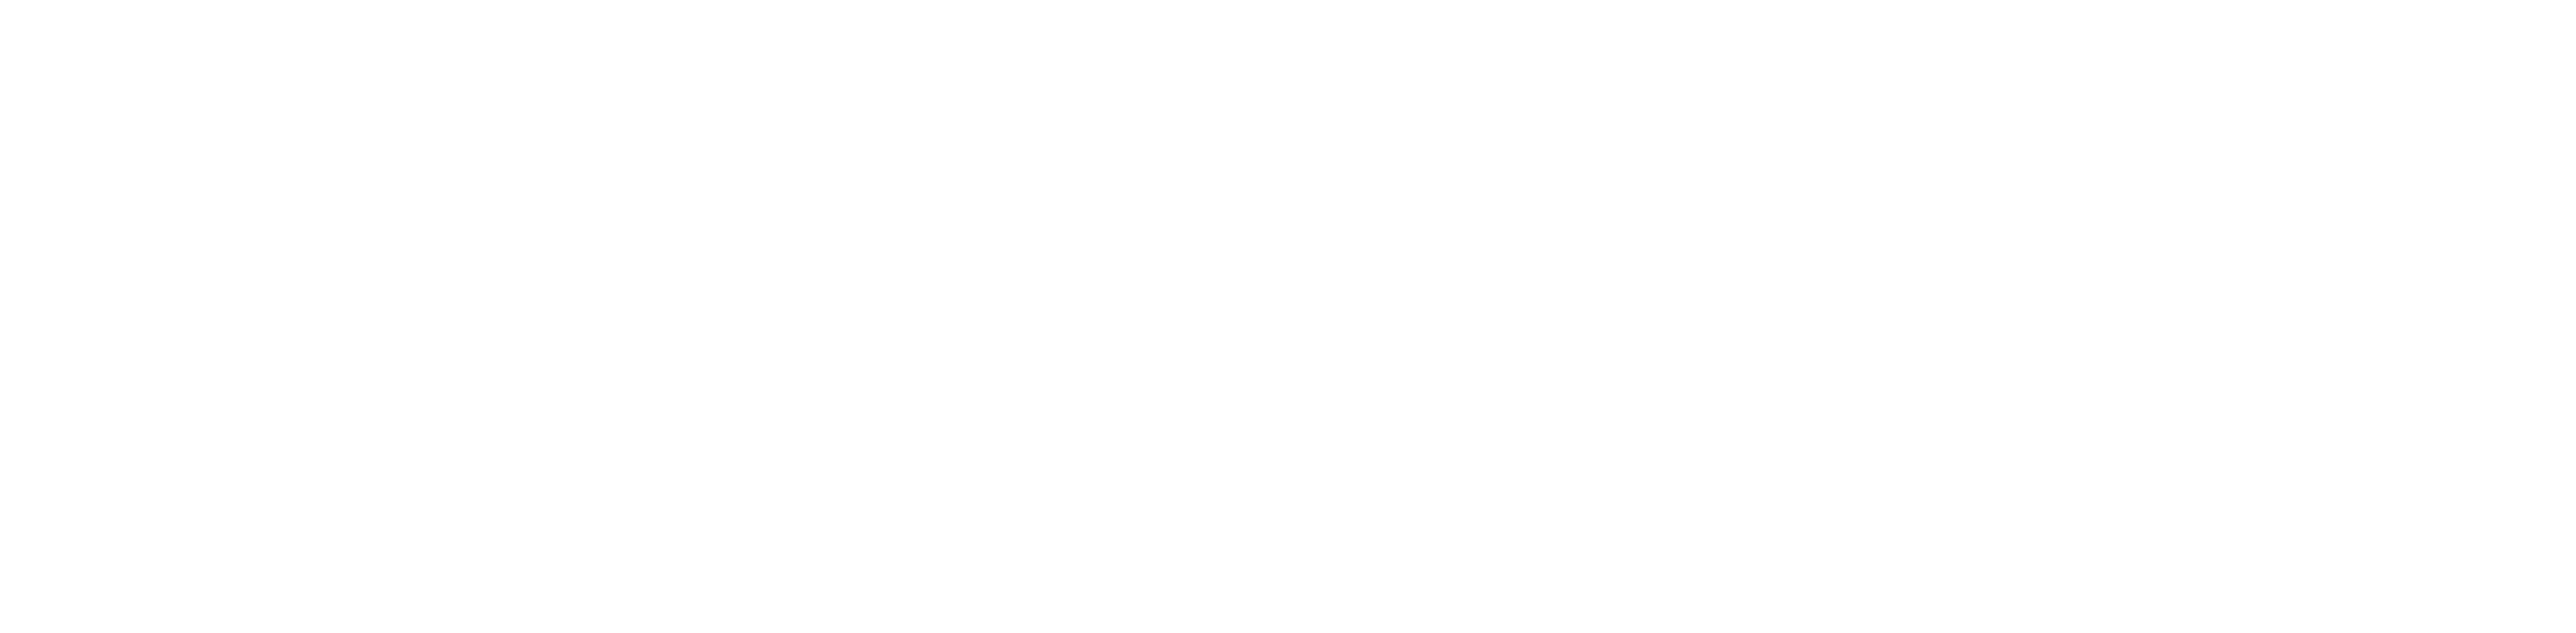 Benno Ridge Media Co Logo White